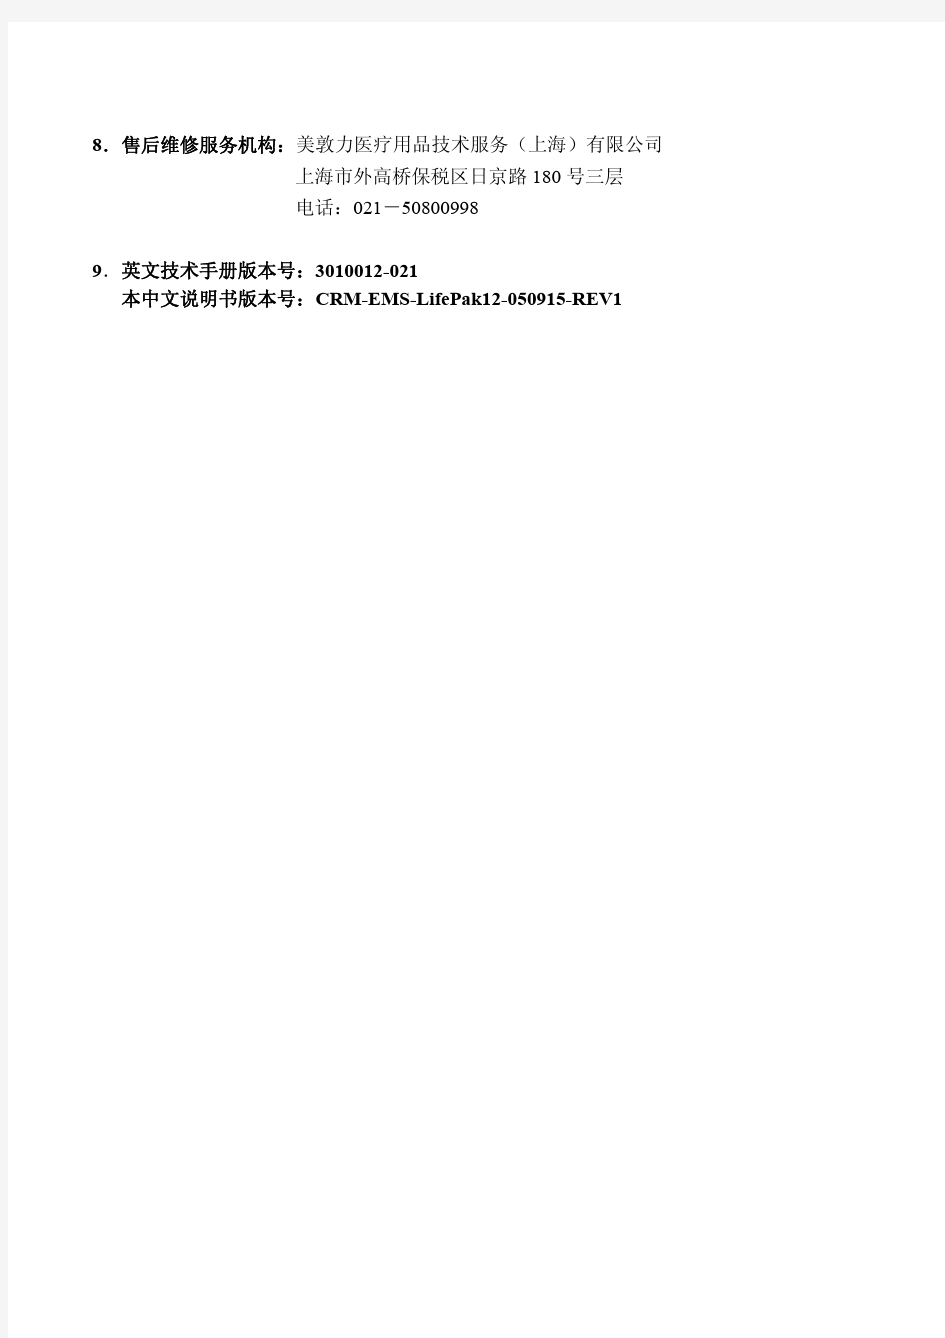 美敦力LIFEPAK12中文操作手册